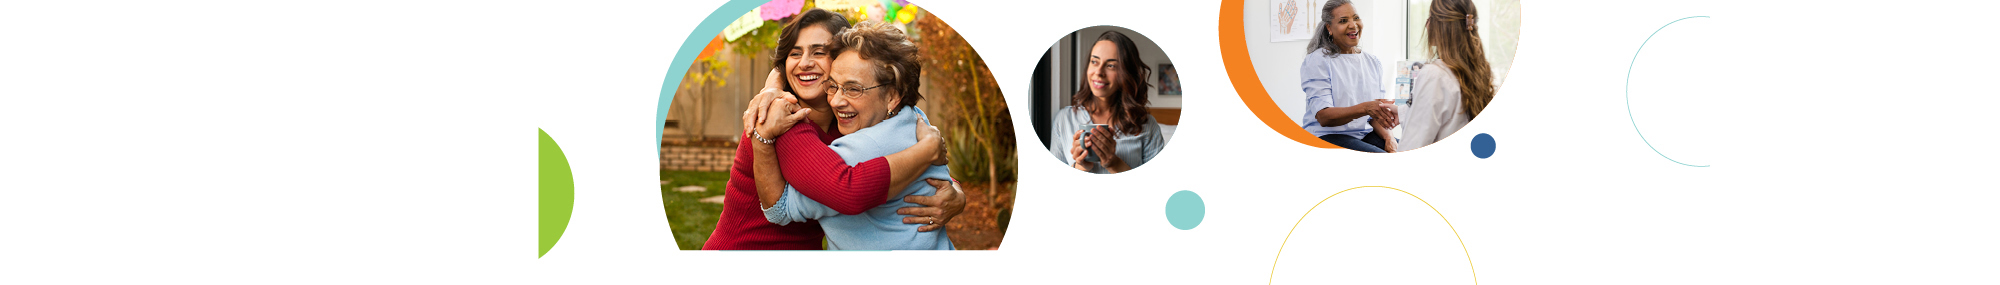 Serie de tres imágenes circulares relacionadas con la salud de las mujeres: dos mujeres abrazadas (izquierda), una mujer sonriendo y mirando por una ventana (centro) y una mujer hablando con un proveedor de atención médica (derecha).